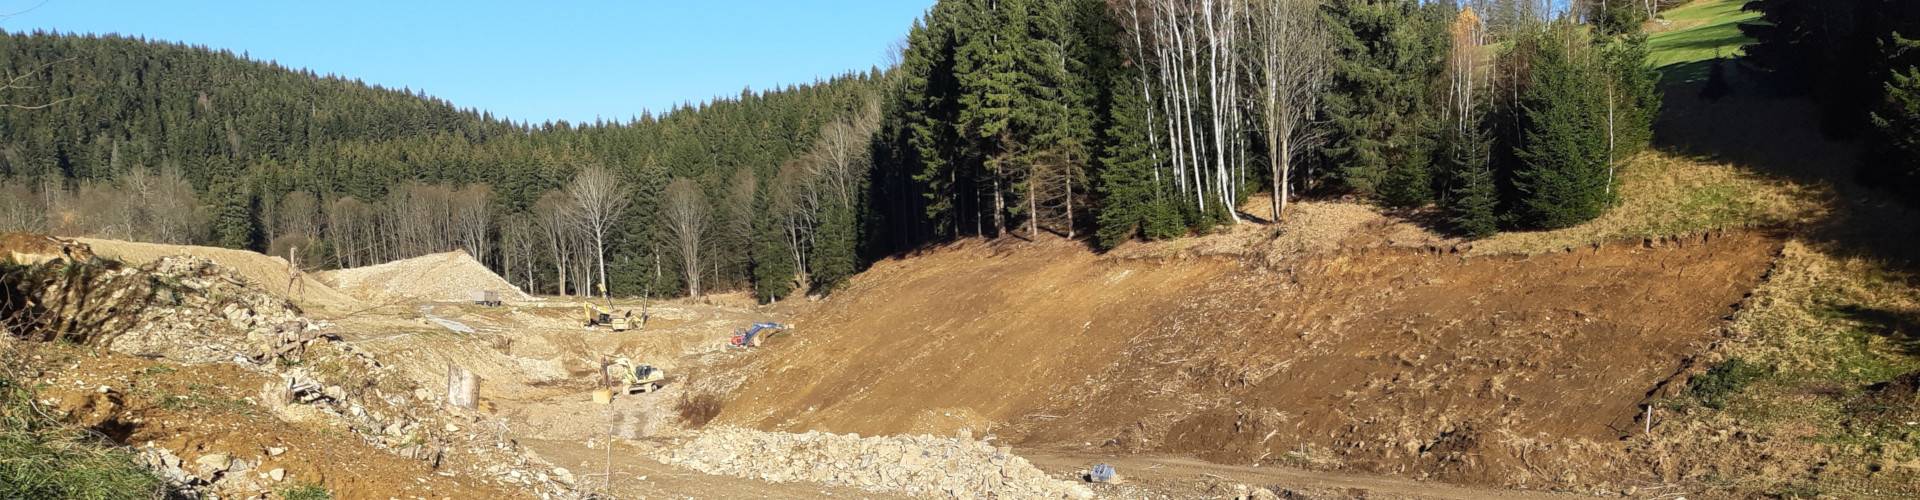 Soudní exekutor JUDr. Dalimil Mika zahájil v roce 2019 bez povolení výstavbu vodní nádrže na zasněžování lyžařského areálu Paprsek s projektovanou plochou zátopy 0,89 ha.